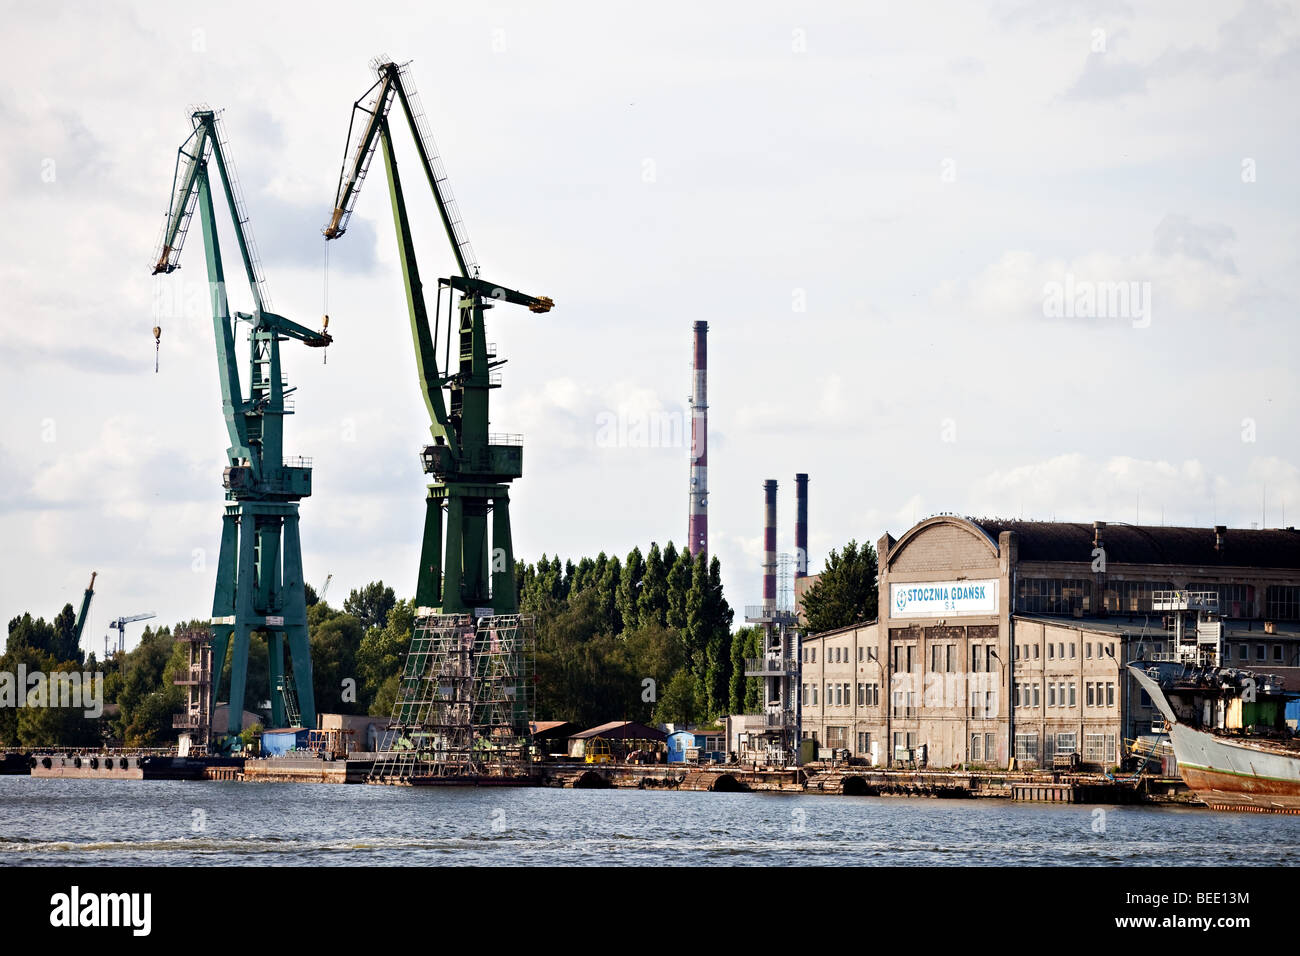 Legendäre Danziger Werft, wo Solidarität freier Gewerkschaften begonnen, Danzig, Polen. Stockfoto